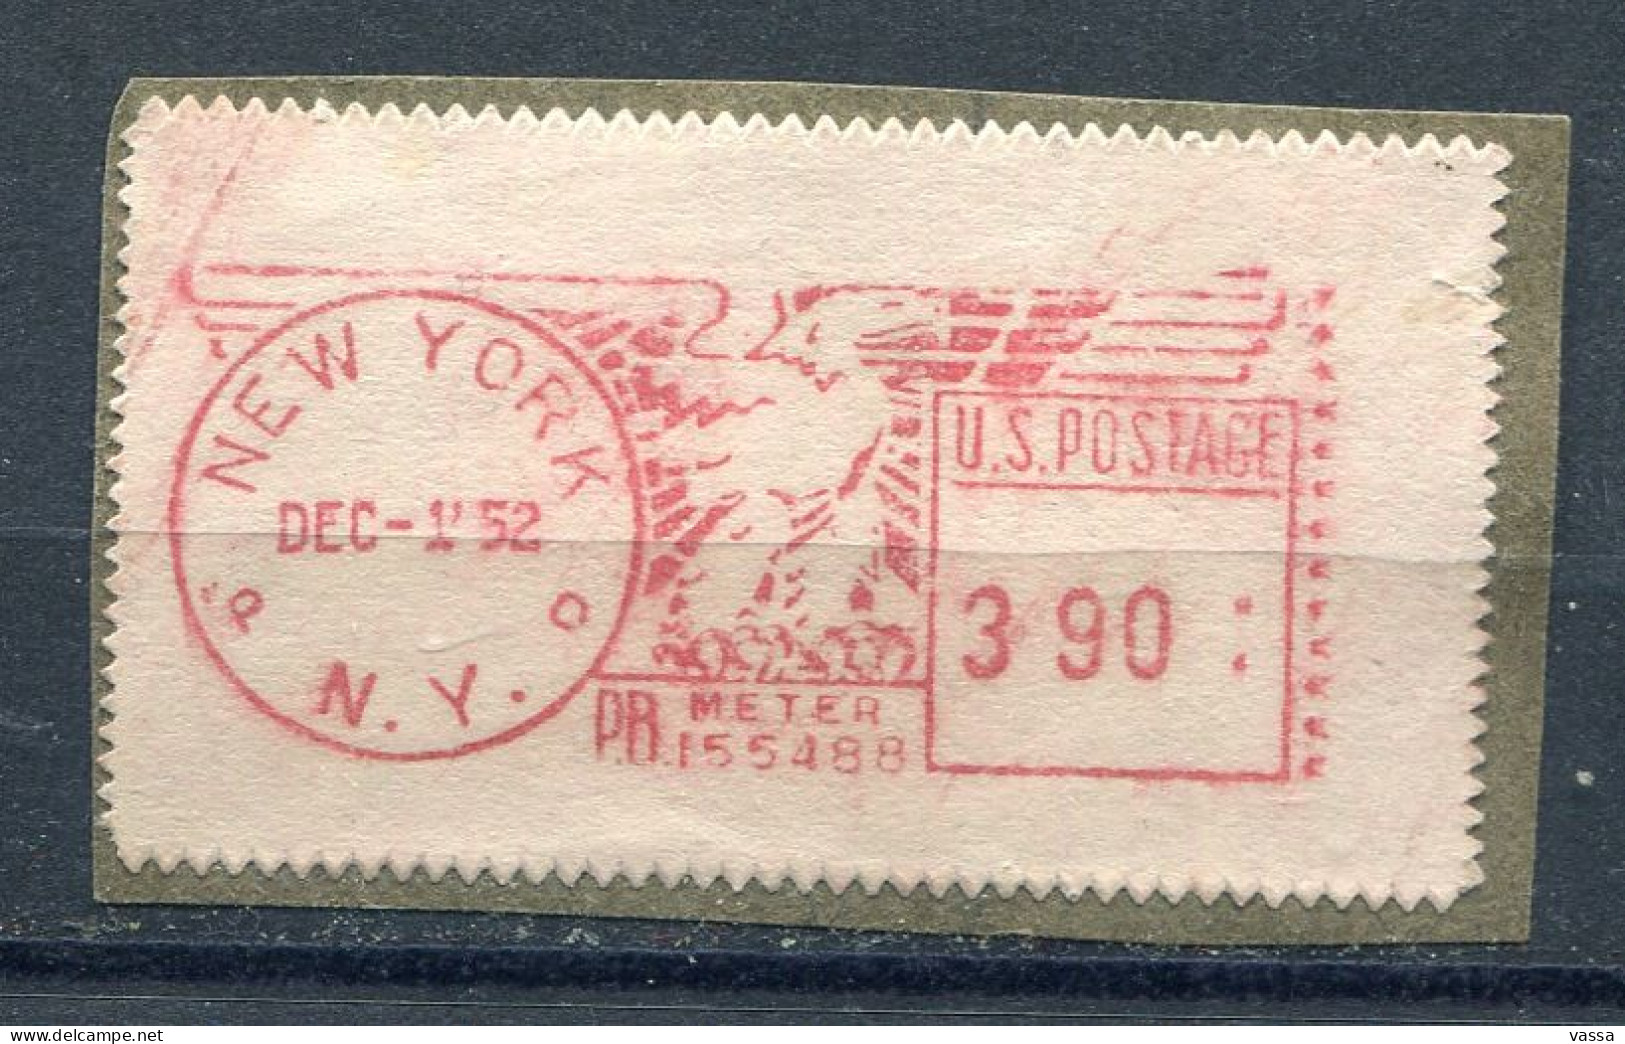 USA -1952 - PB Meter N°155488 PB - New-York  / Fragment- Aigle - Usados